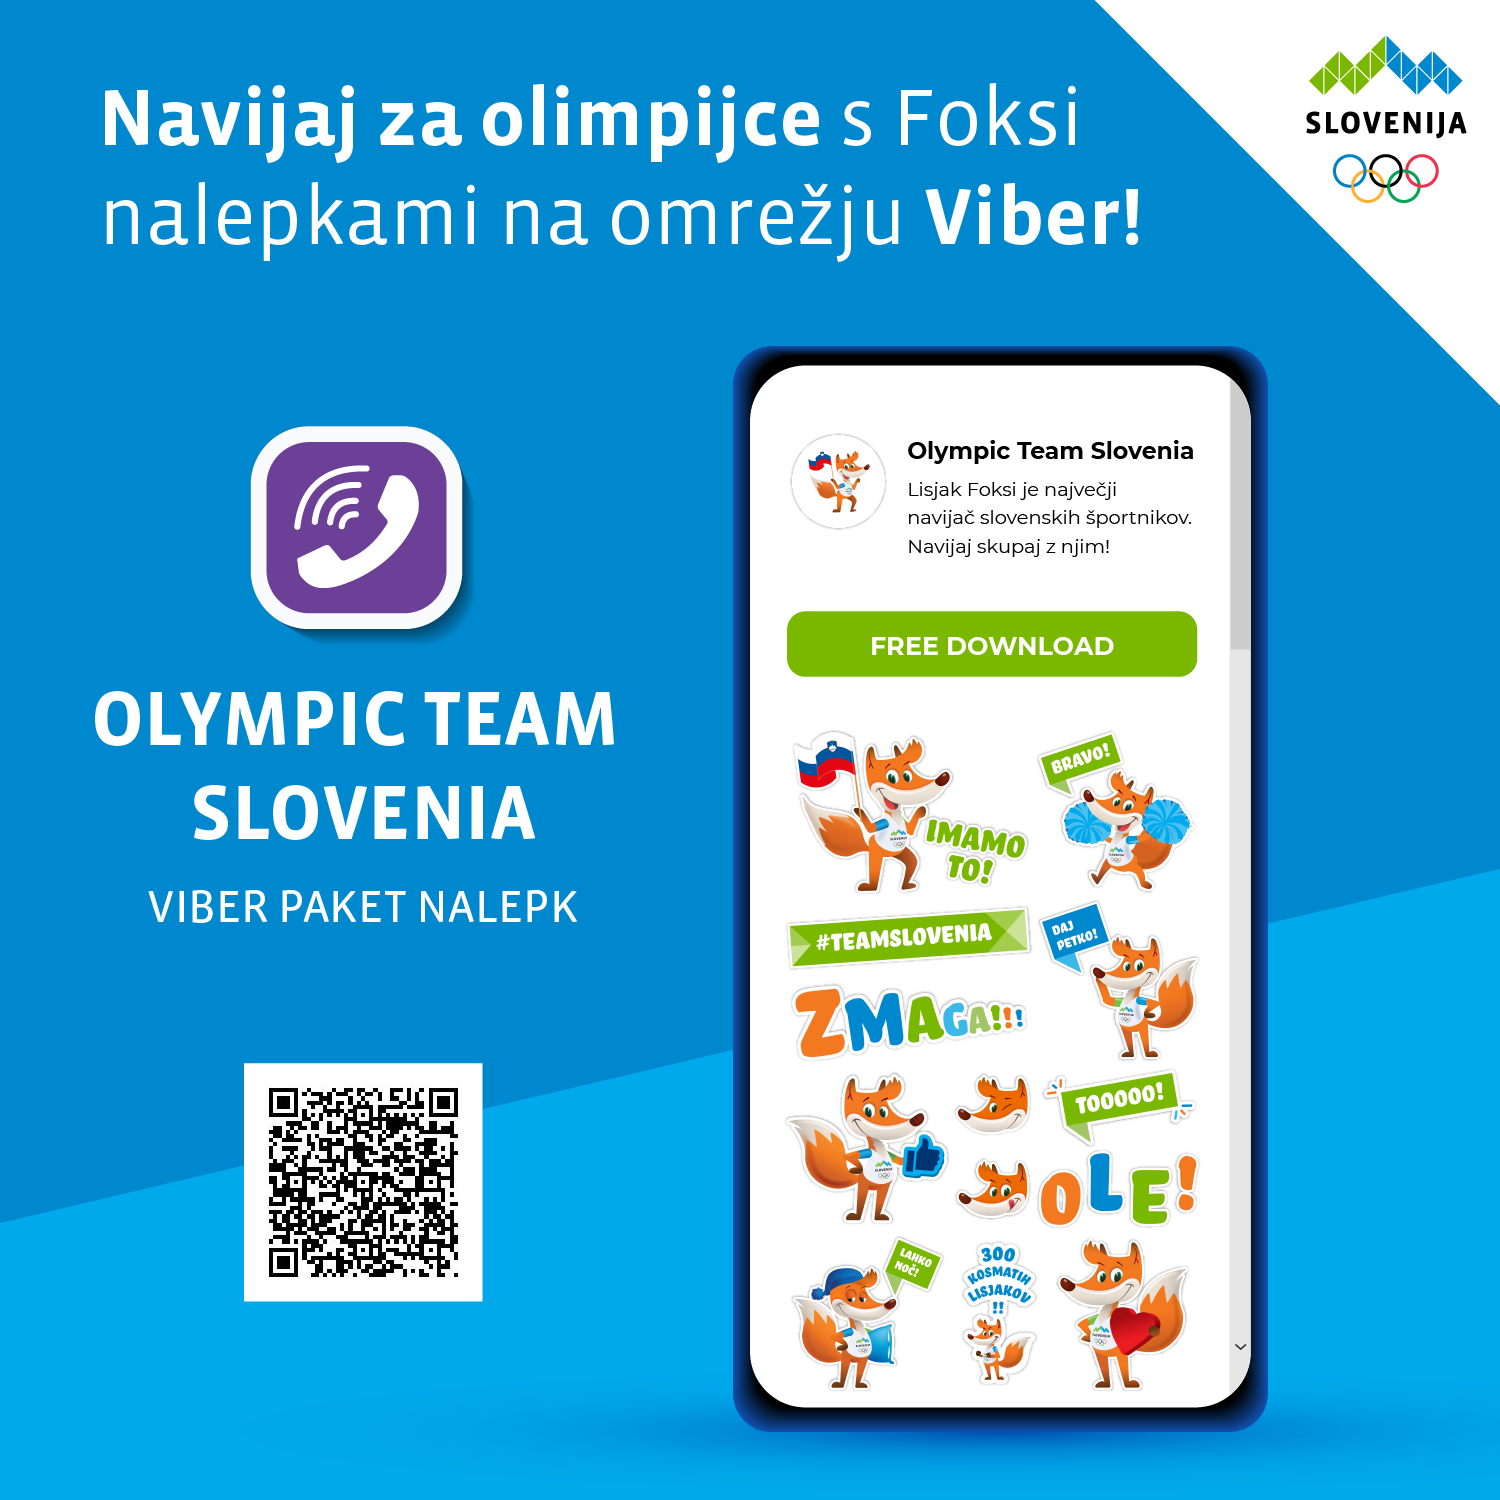  Rakuten Viber del slovenske olimpijske družine